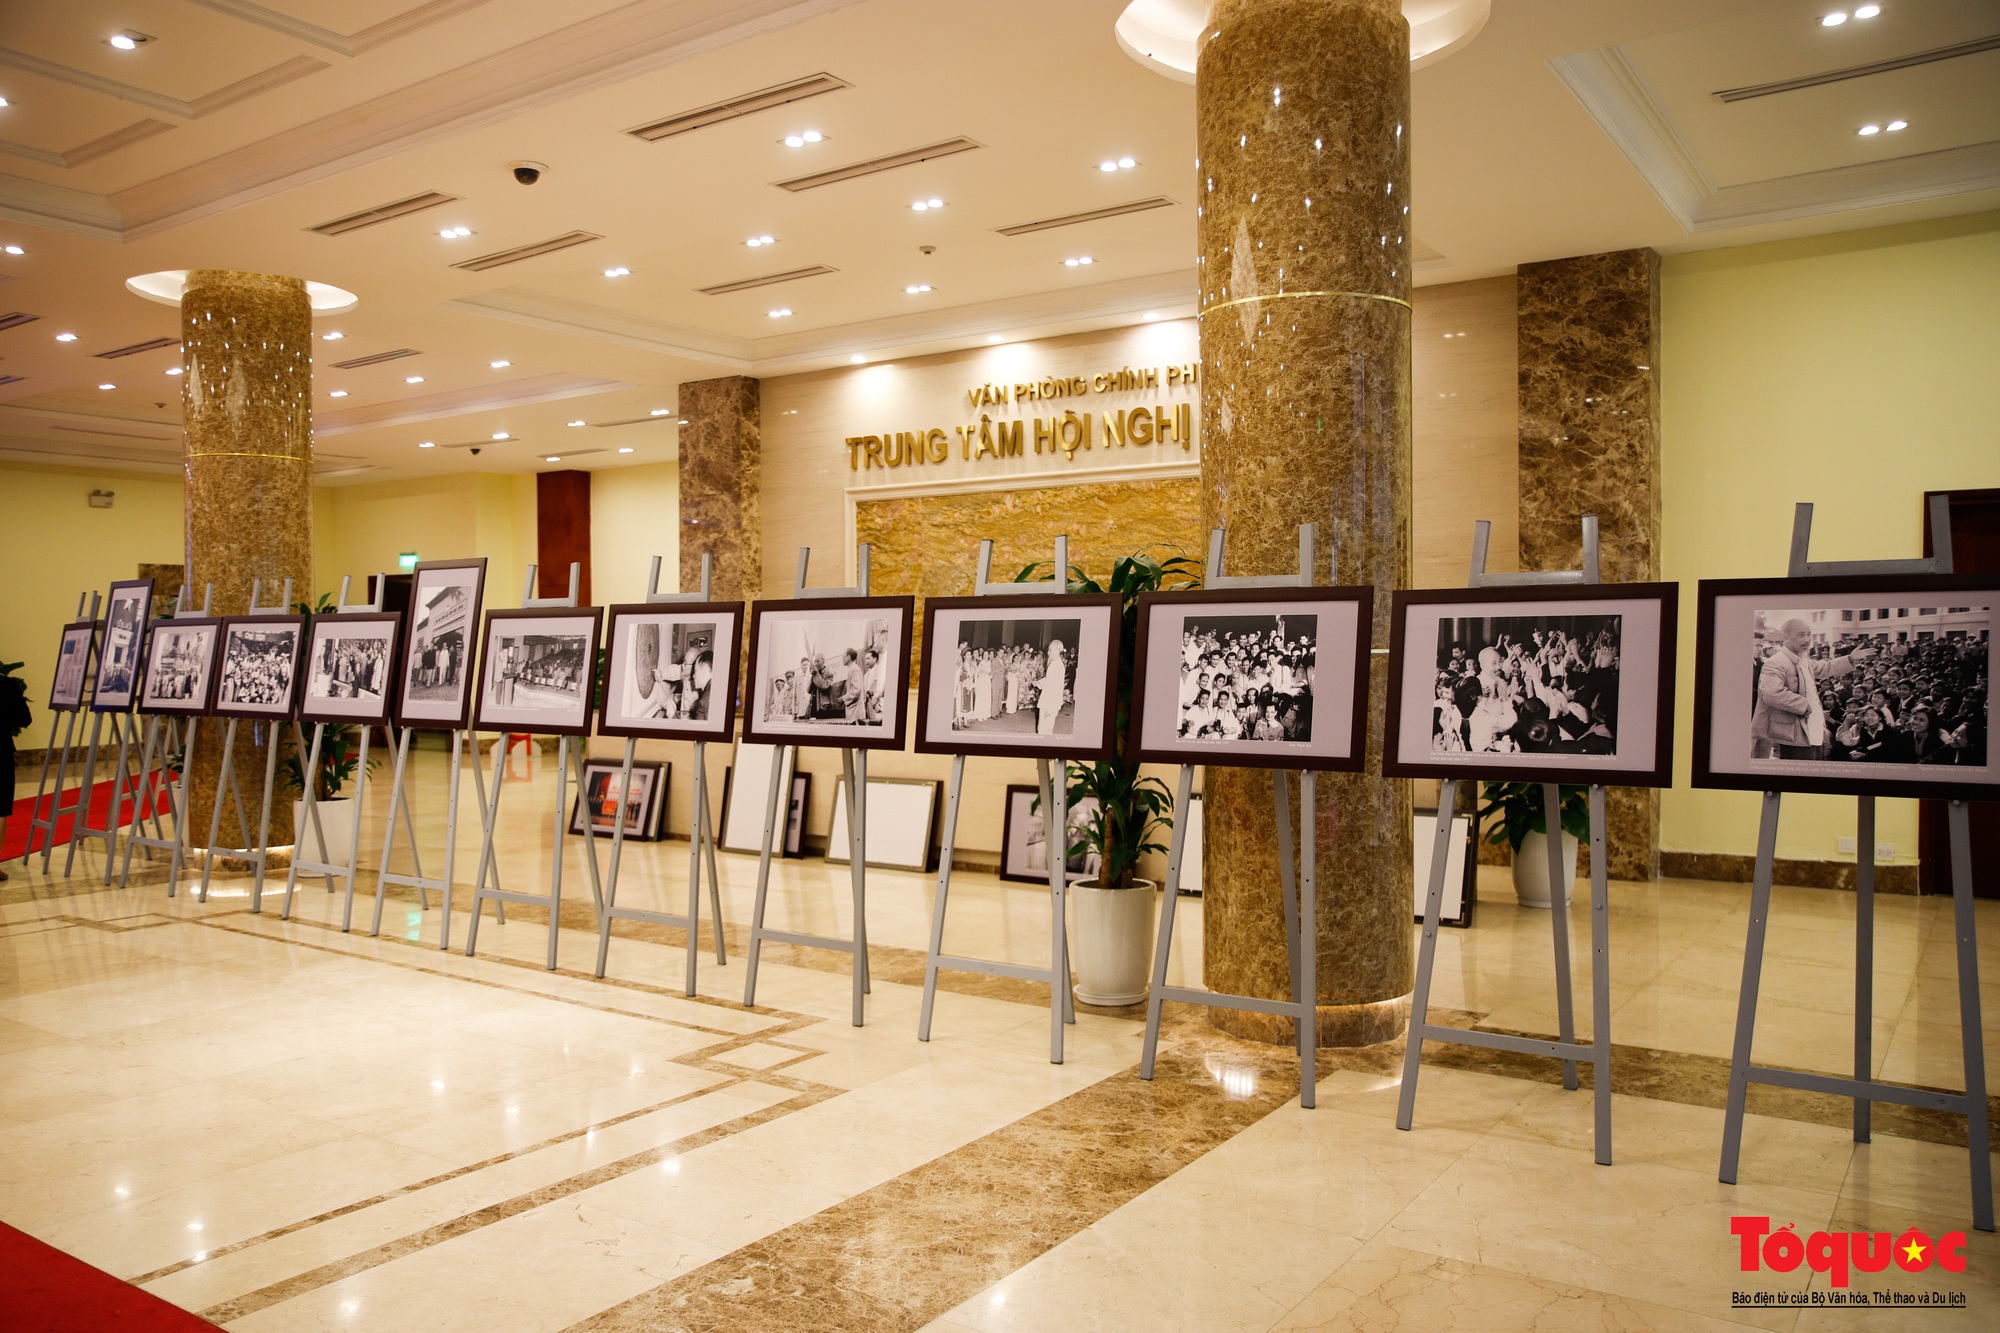 Lãnh đạo Bộ Văn hóa, Thể thao và Du lịch kiểm tra công tác chuẩn bị cho Triển lãm ảnh 80 năm Đề cương về Văn hóa Việt Nam - Ảnh 5.